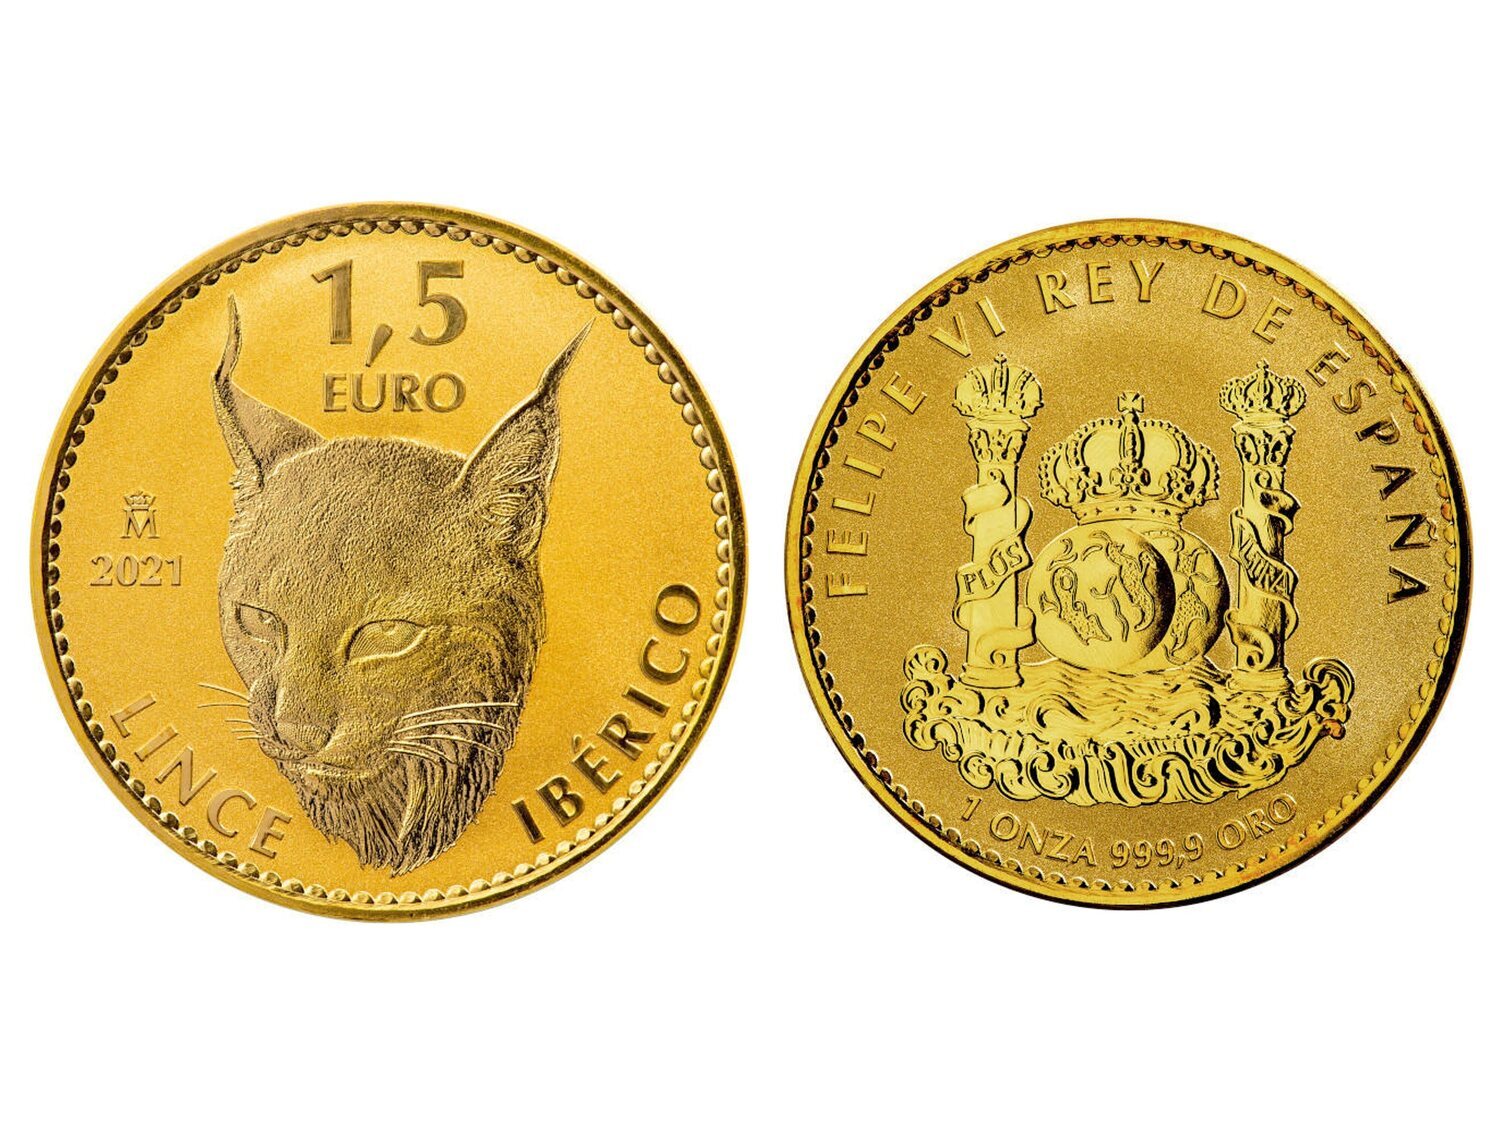 Así es la nueva moneda de 1,5 euros que ya circula por España